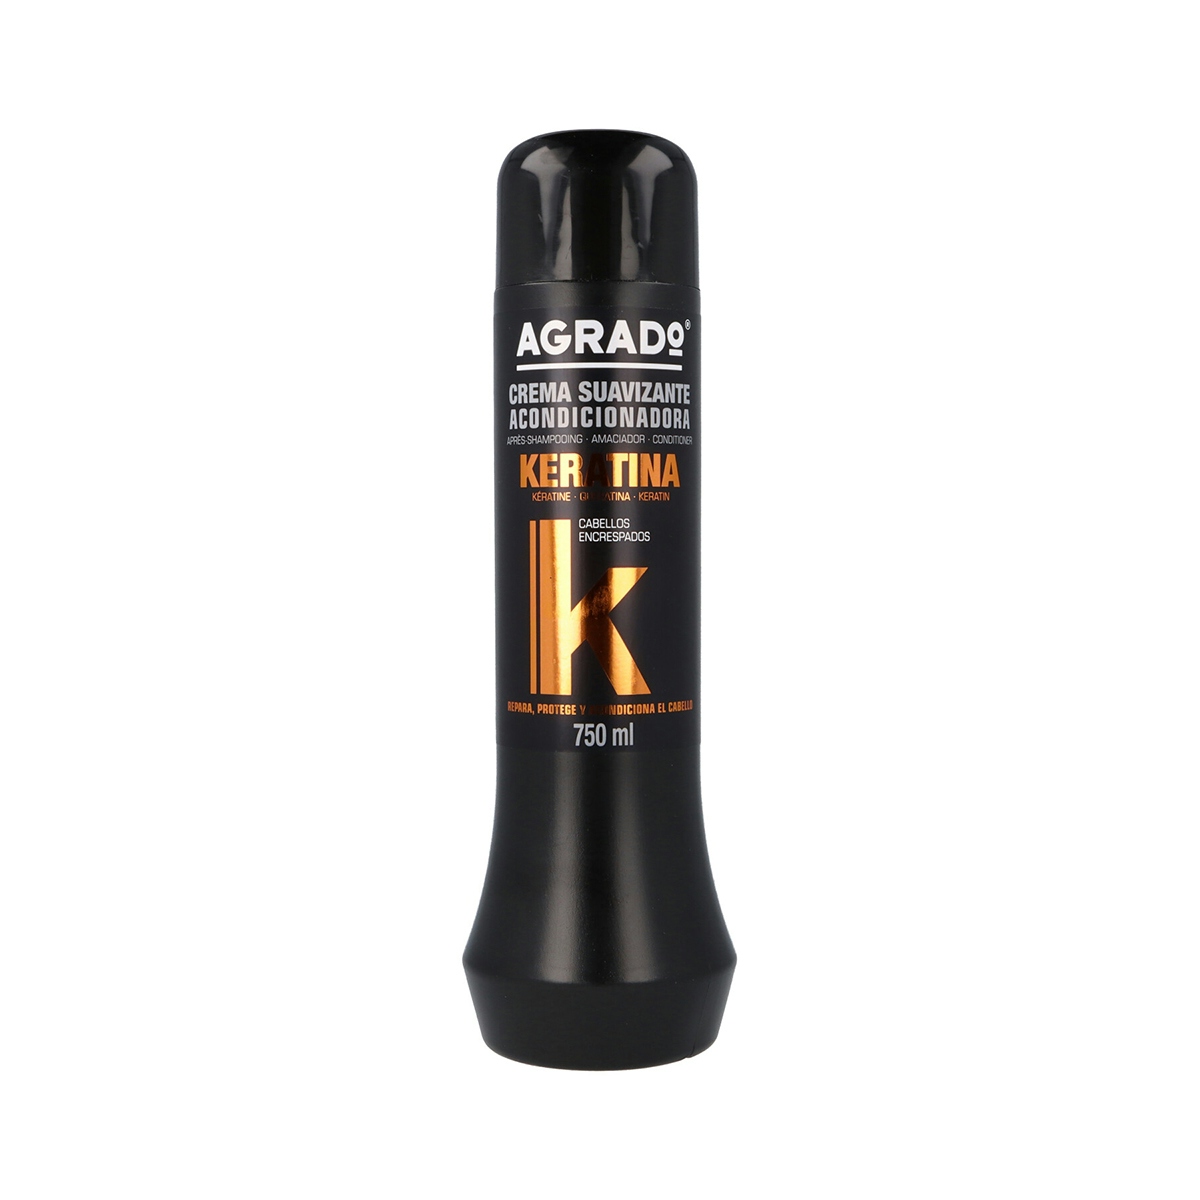 Crema suavizante AGRADO keratina para cabellos encrespados 750 ml